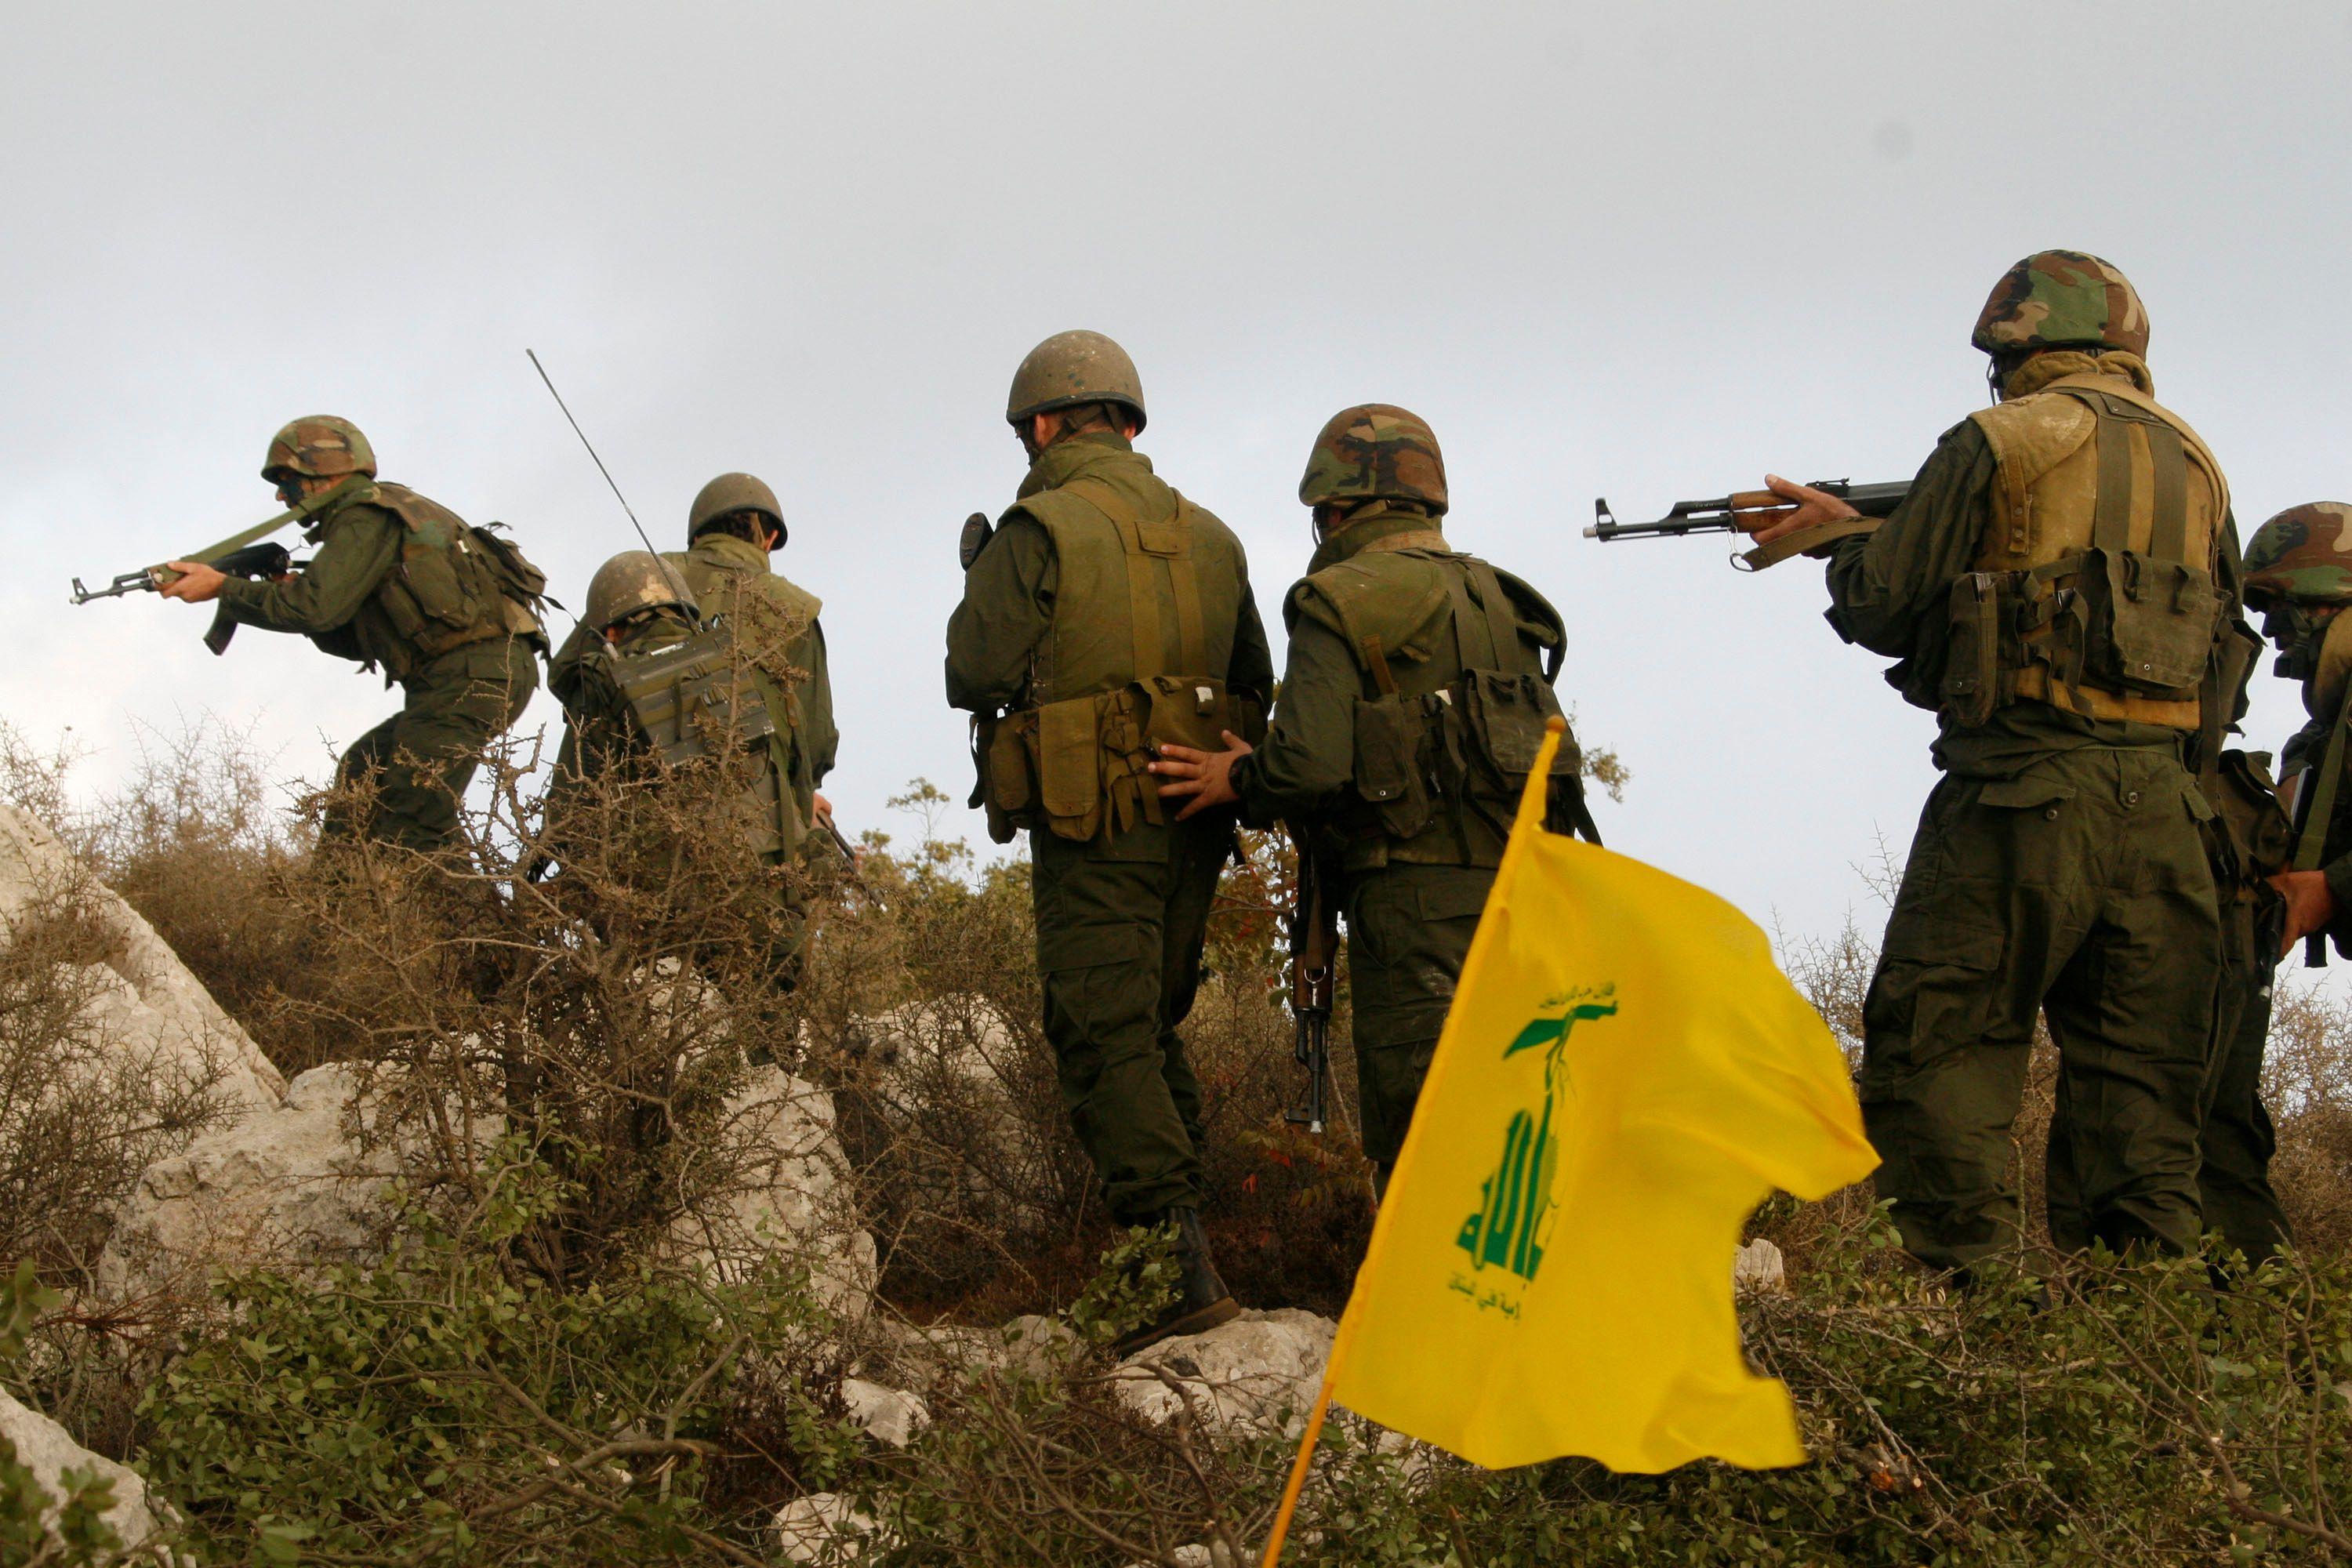 بعد أيام من الهدوء النسبي، عودة التصعيد بين حزب الله وإسرائيل